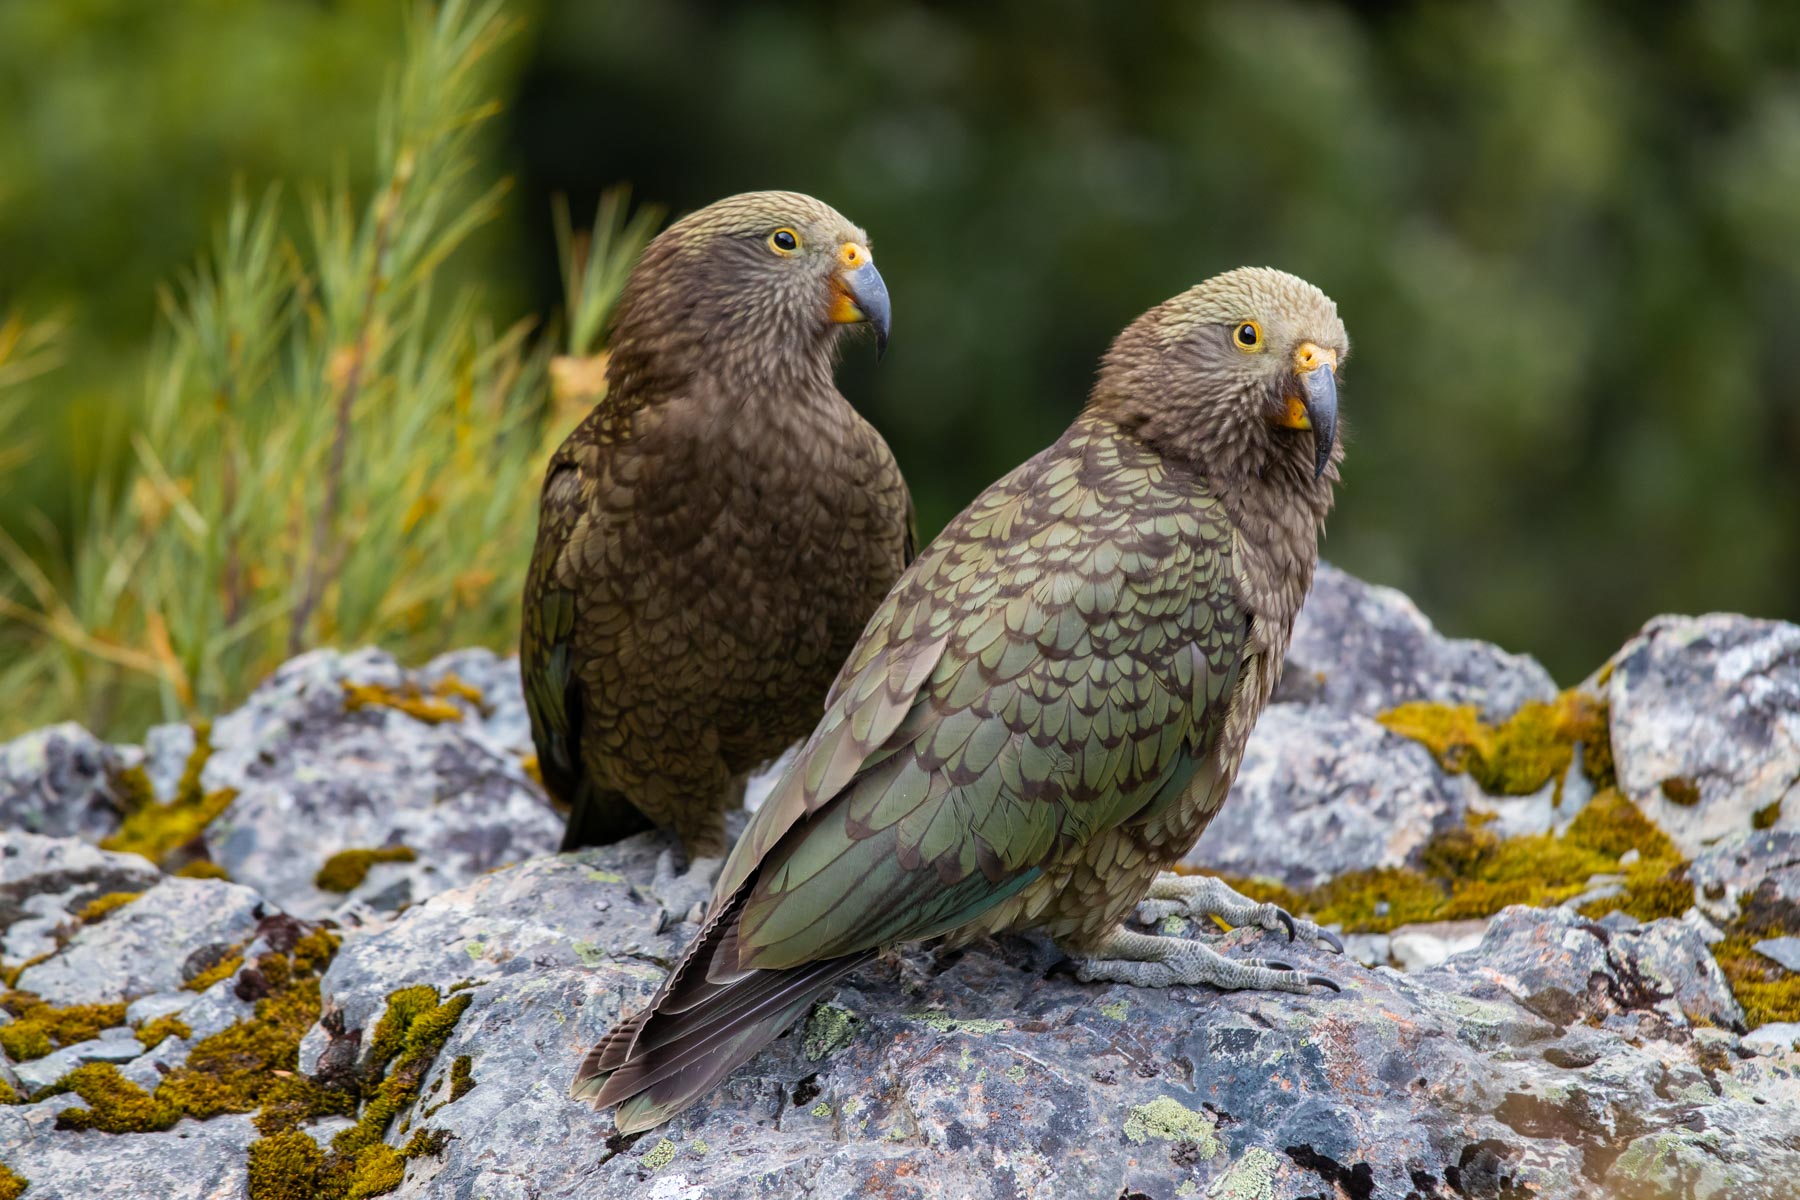 Posé sur un rocher, un couple de kea regarde le photographe.